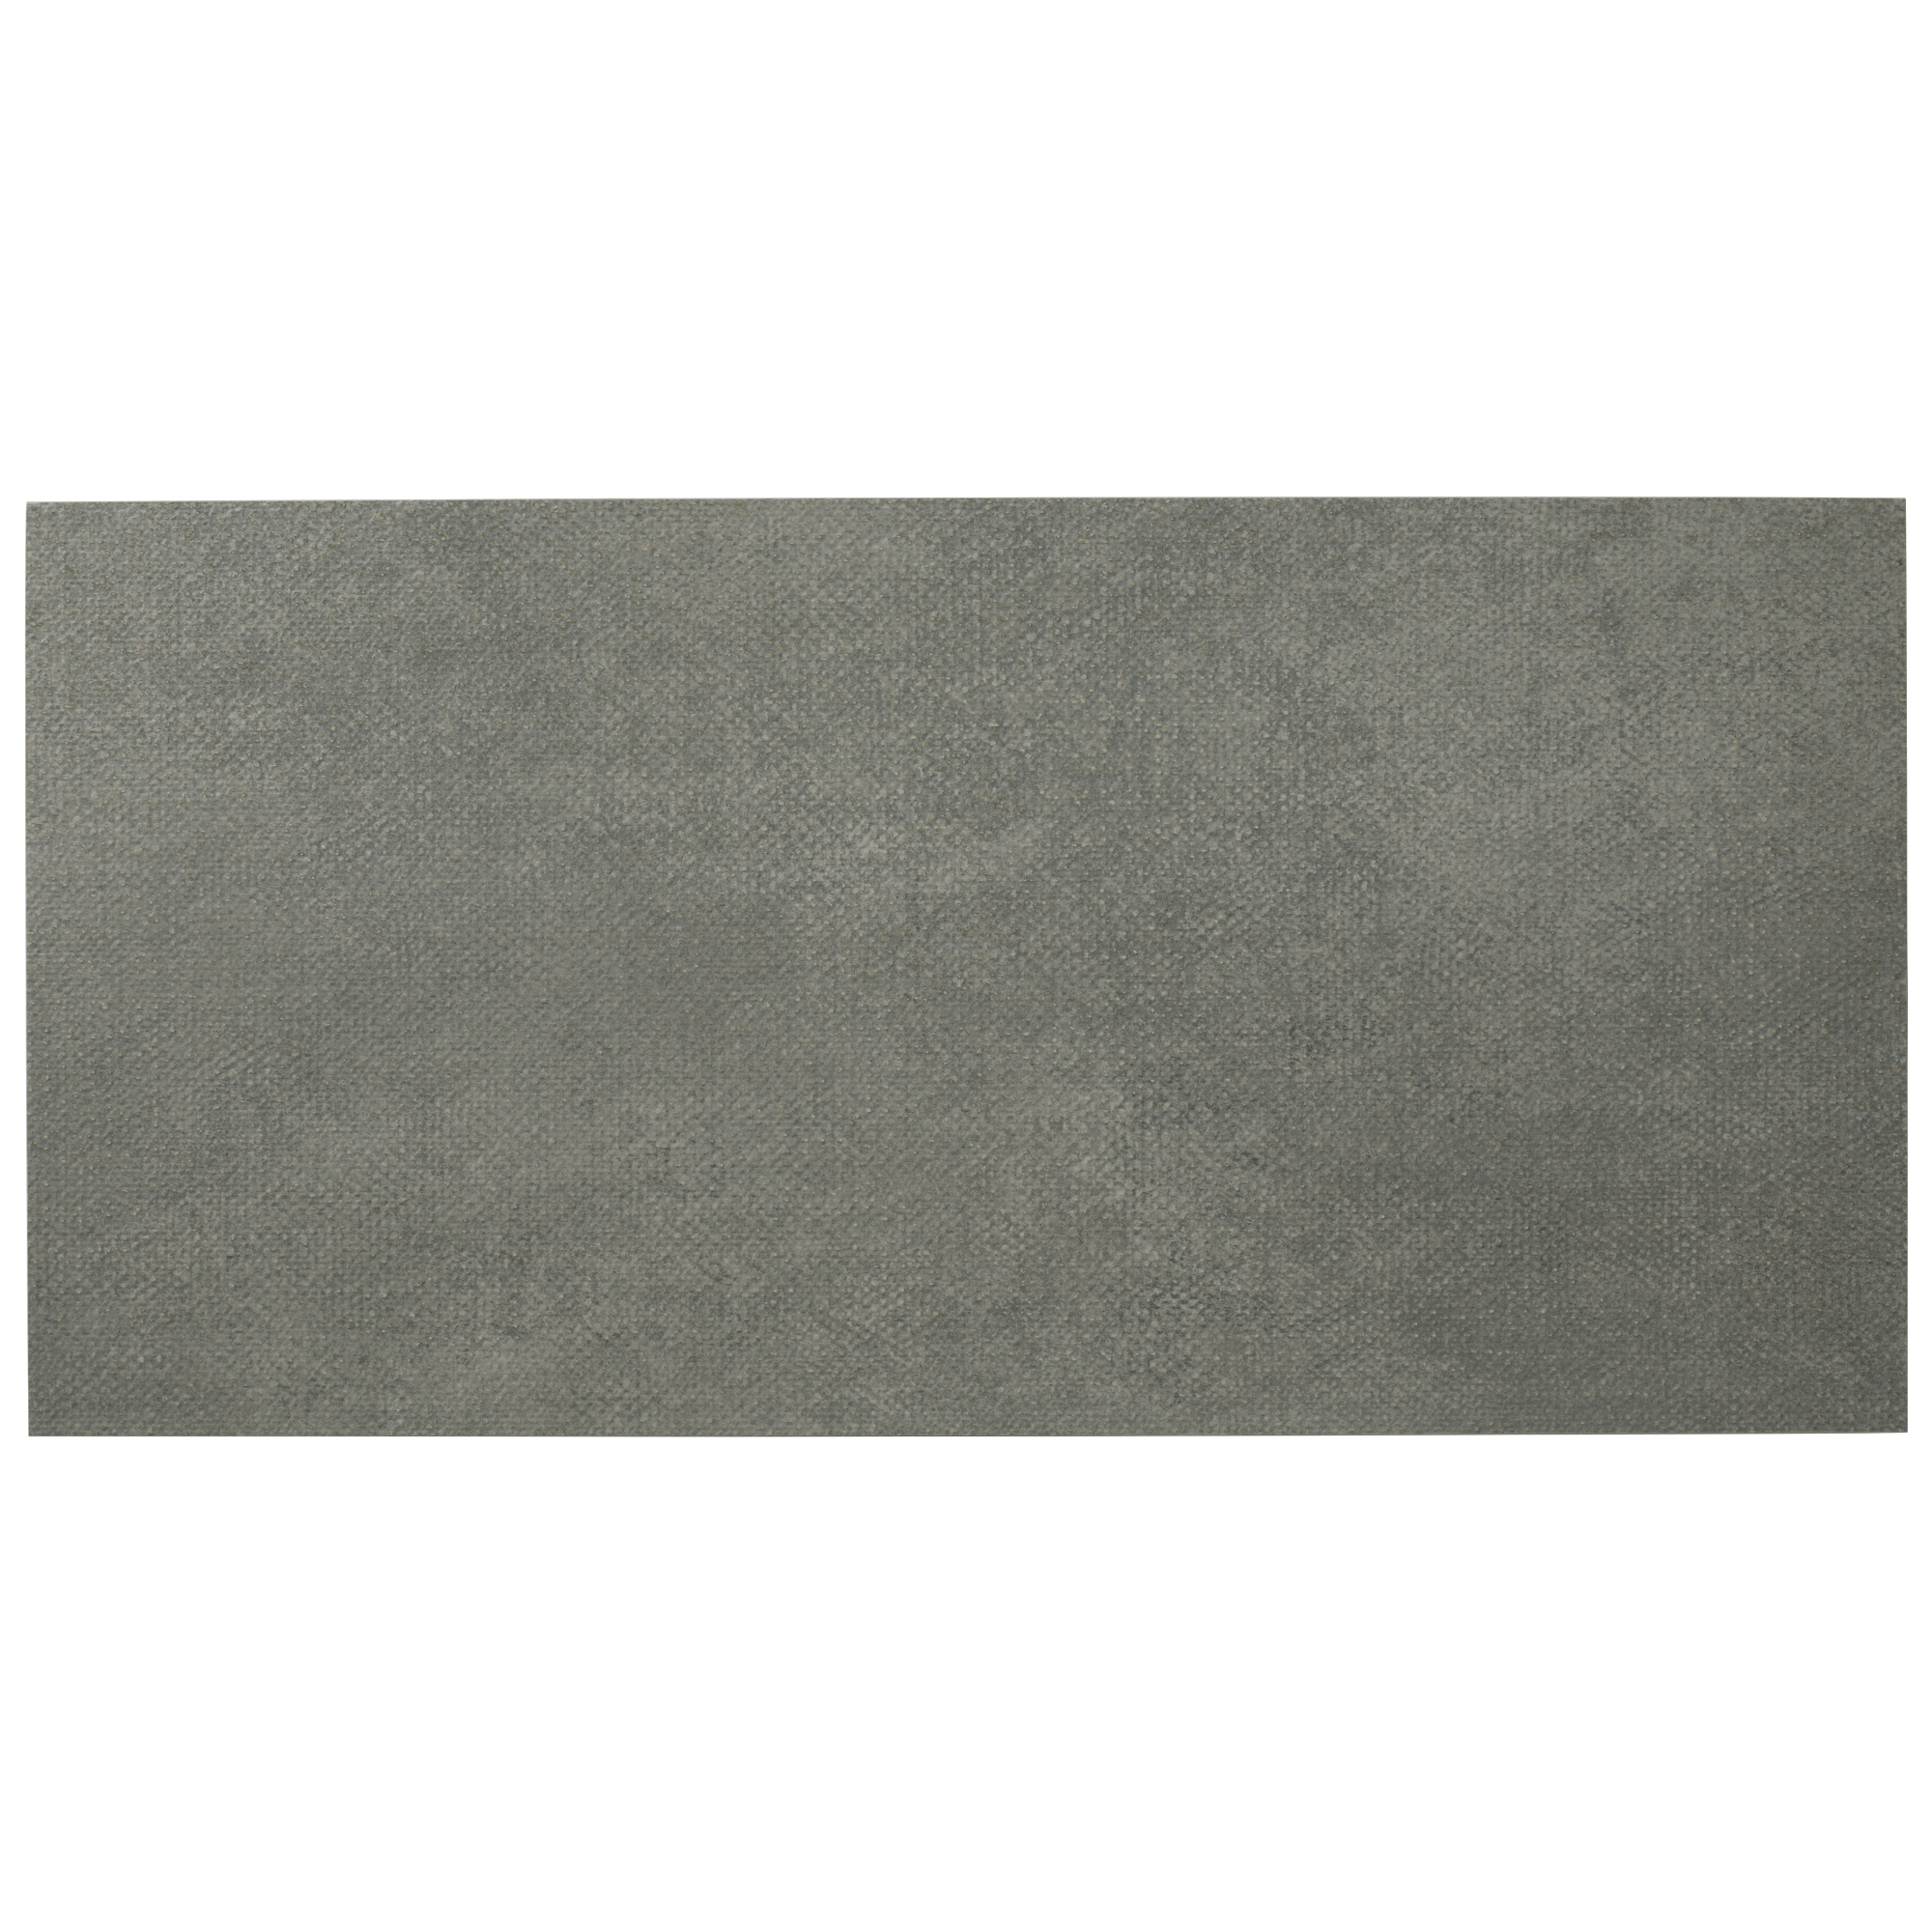 Diesel Army Canvas Grey Lappato 30x60cm